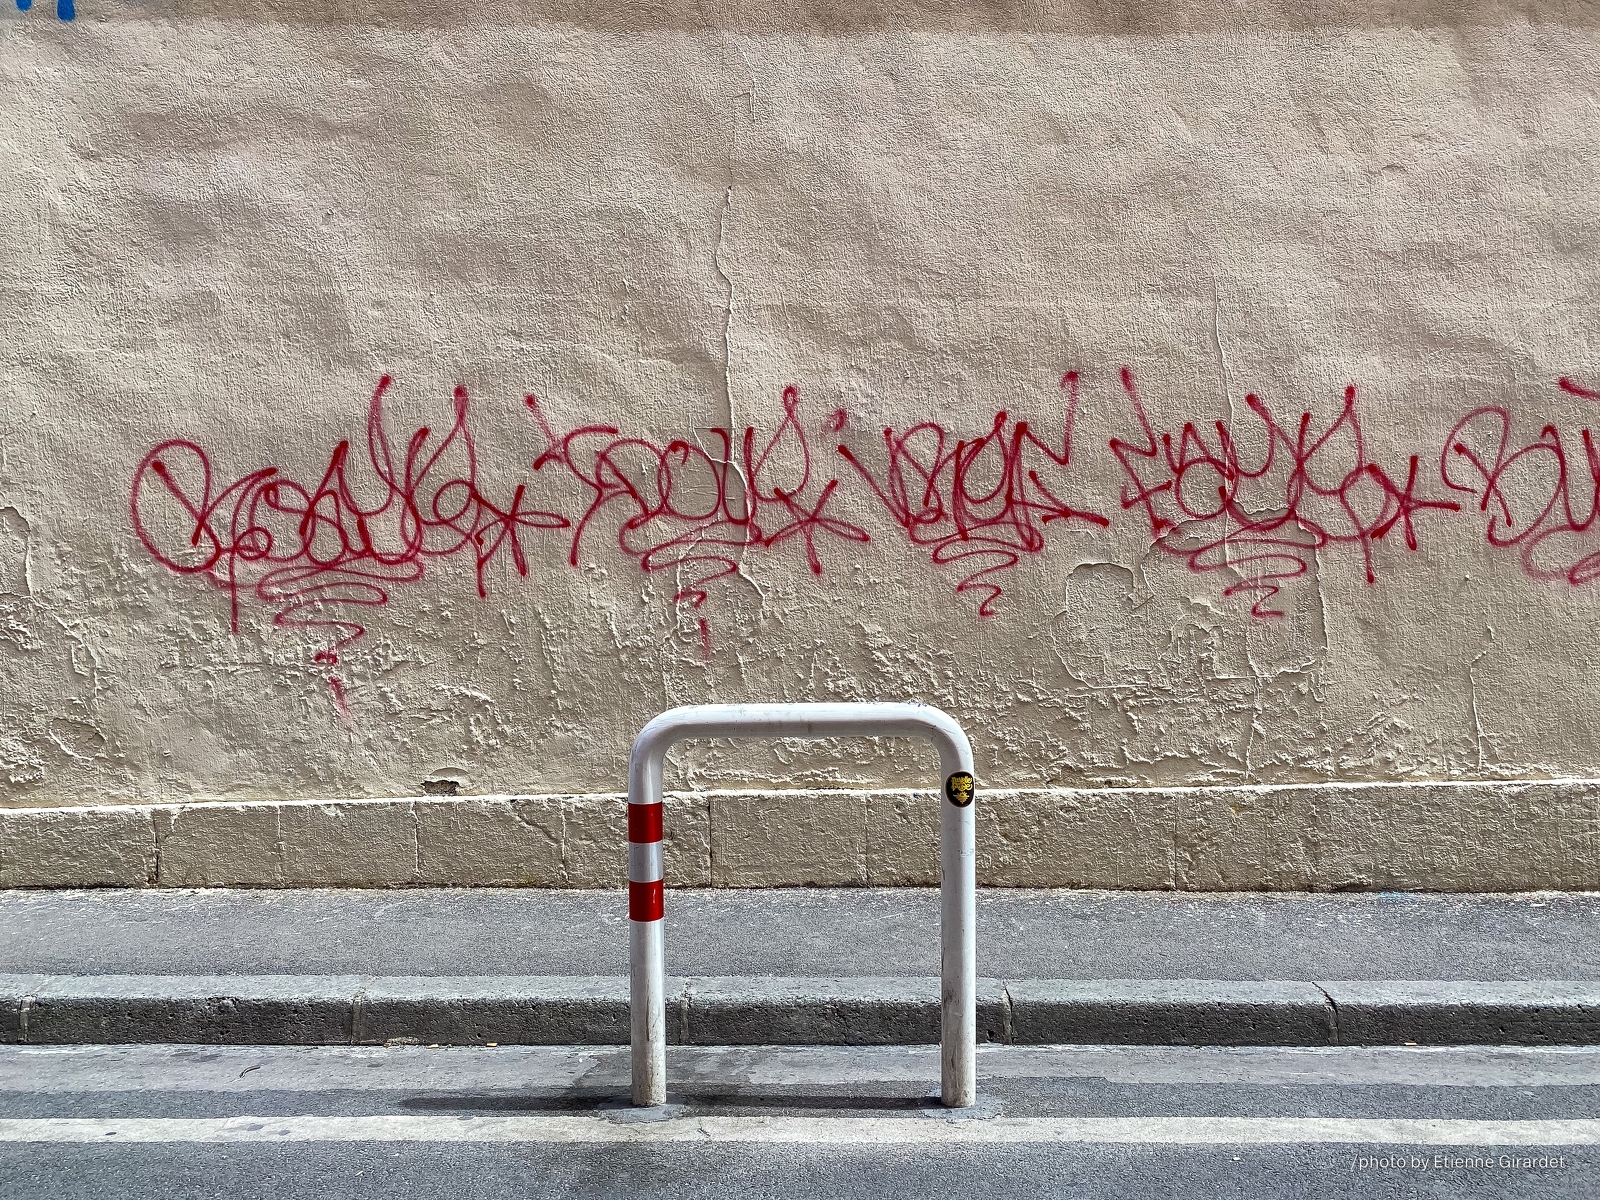 202204_15_IMG_0823-graffiti-street-barrier-stilllife-by-E-Girardet.jpg